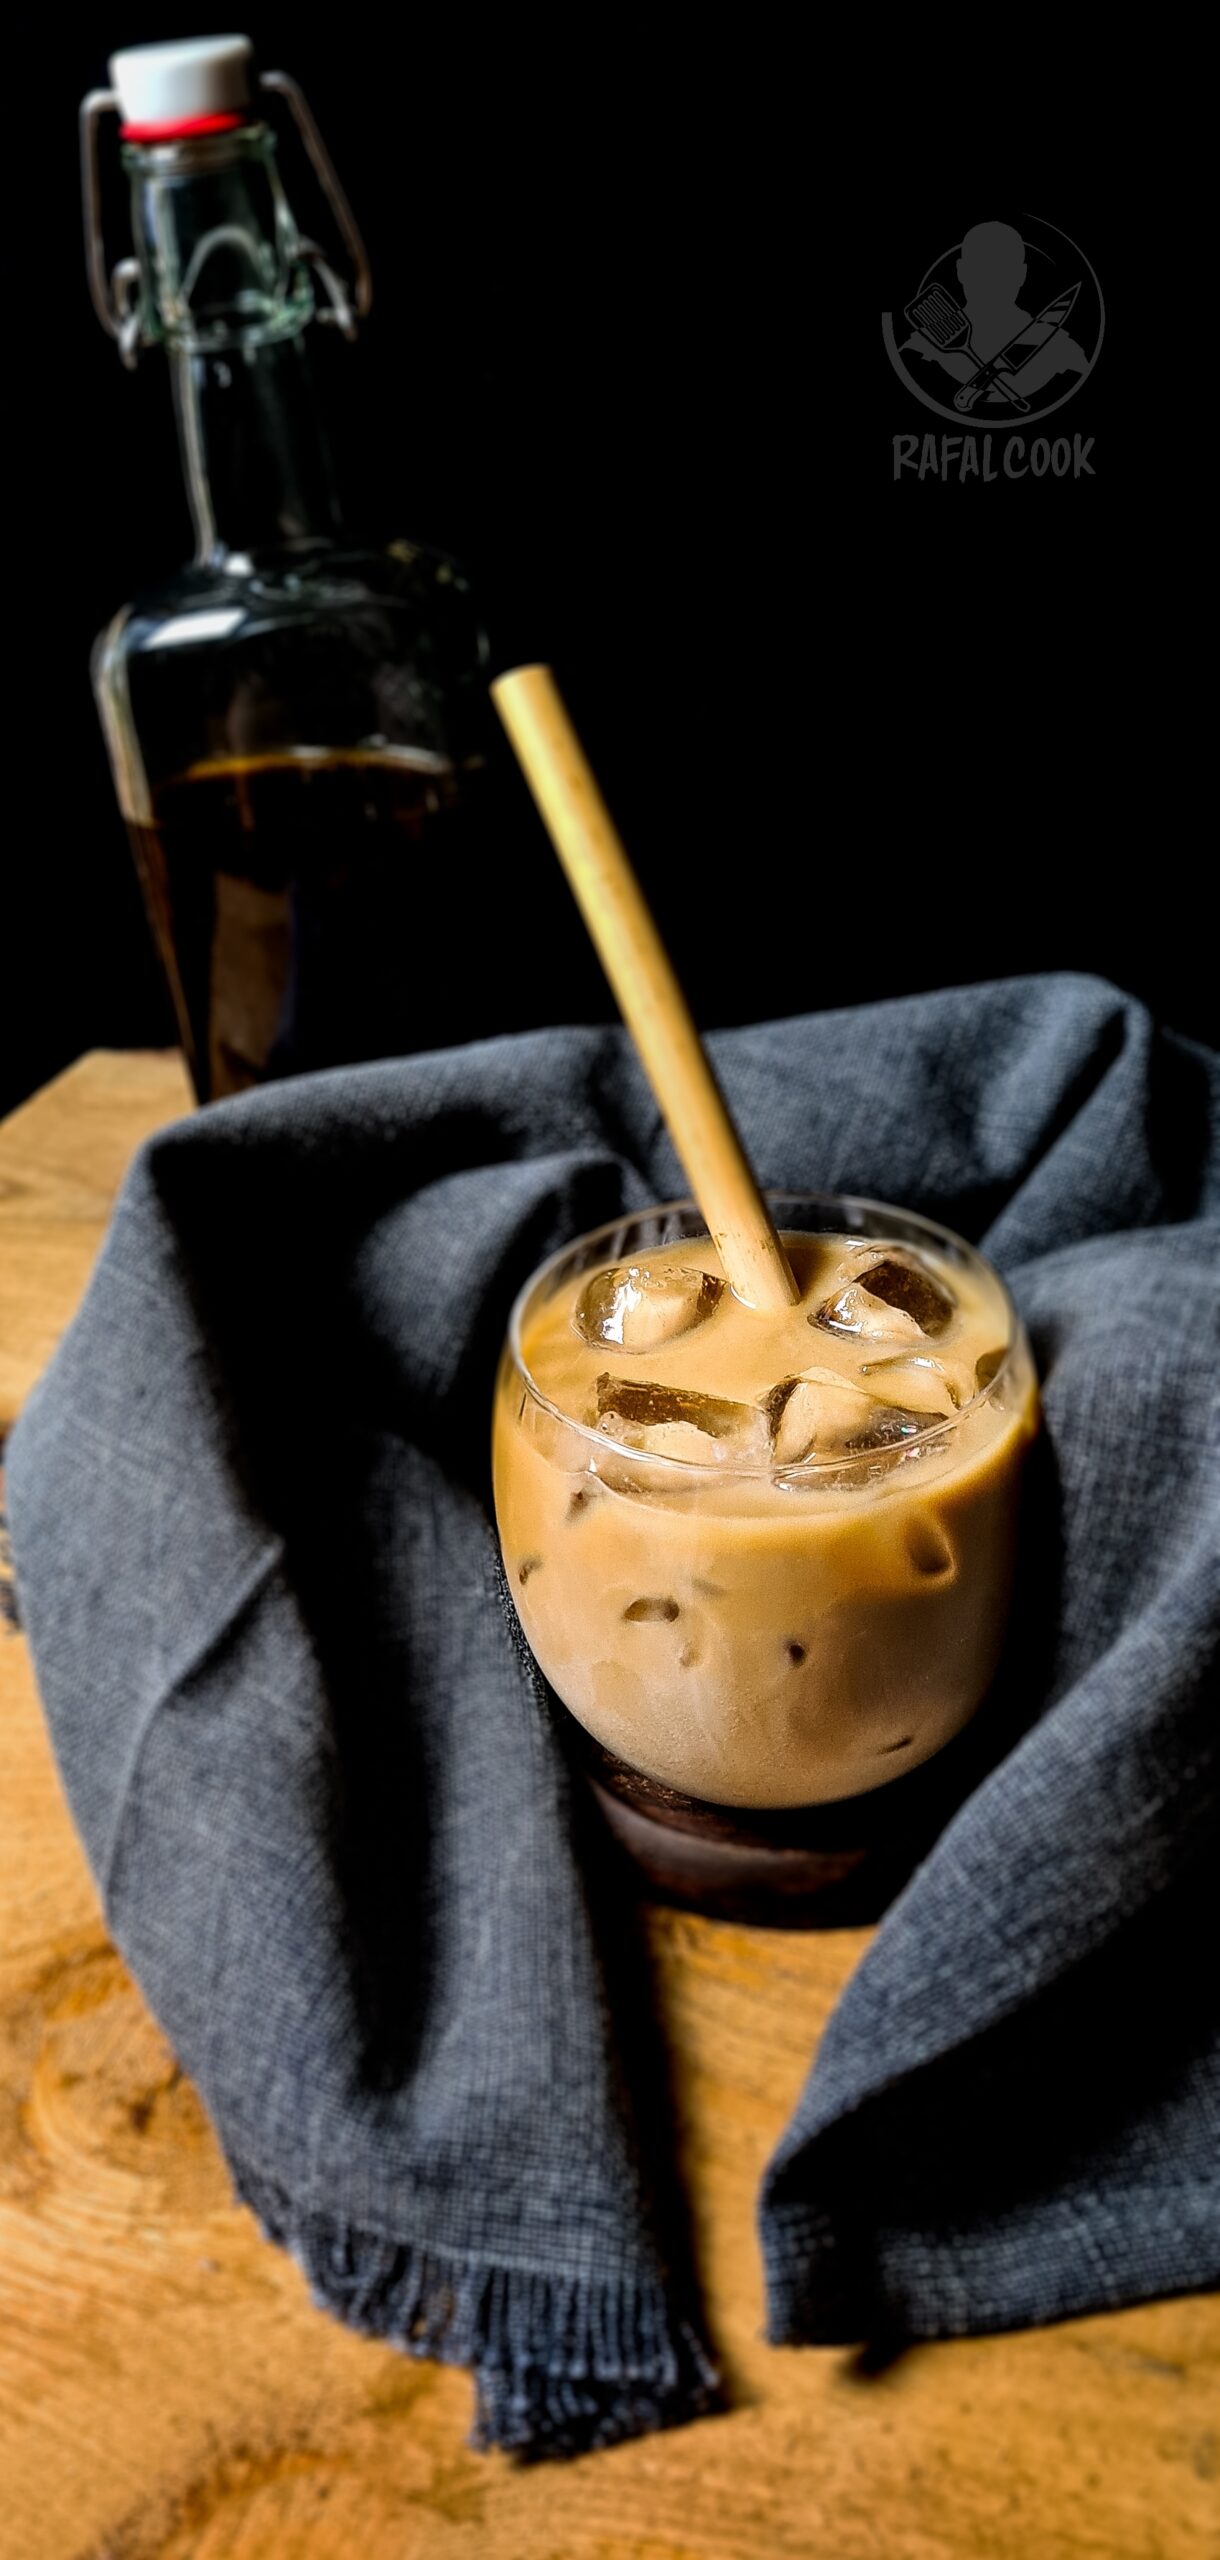 Cold Brew Coffee, czyli kawa parzona na zimno